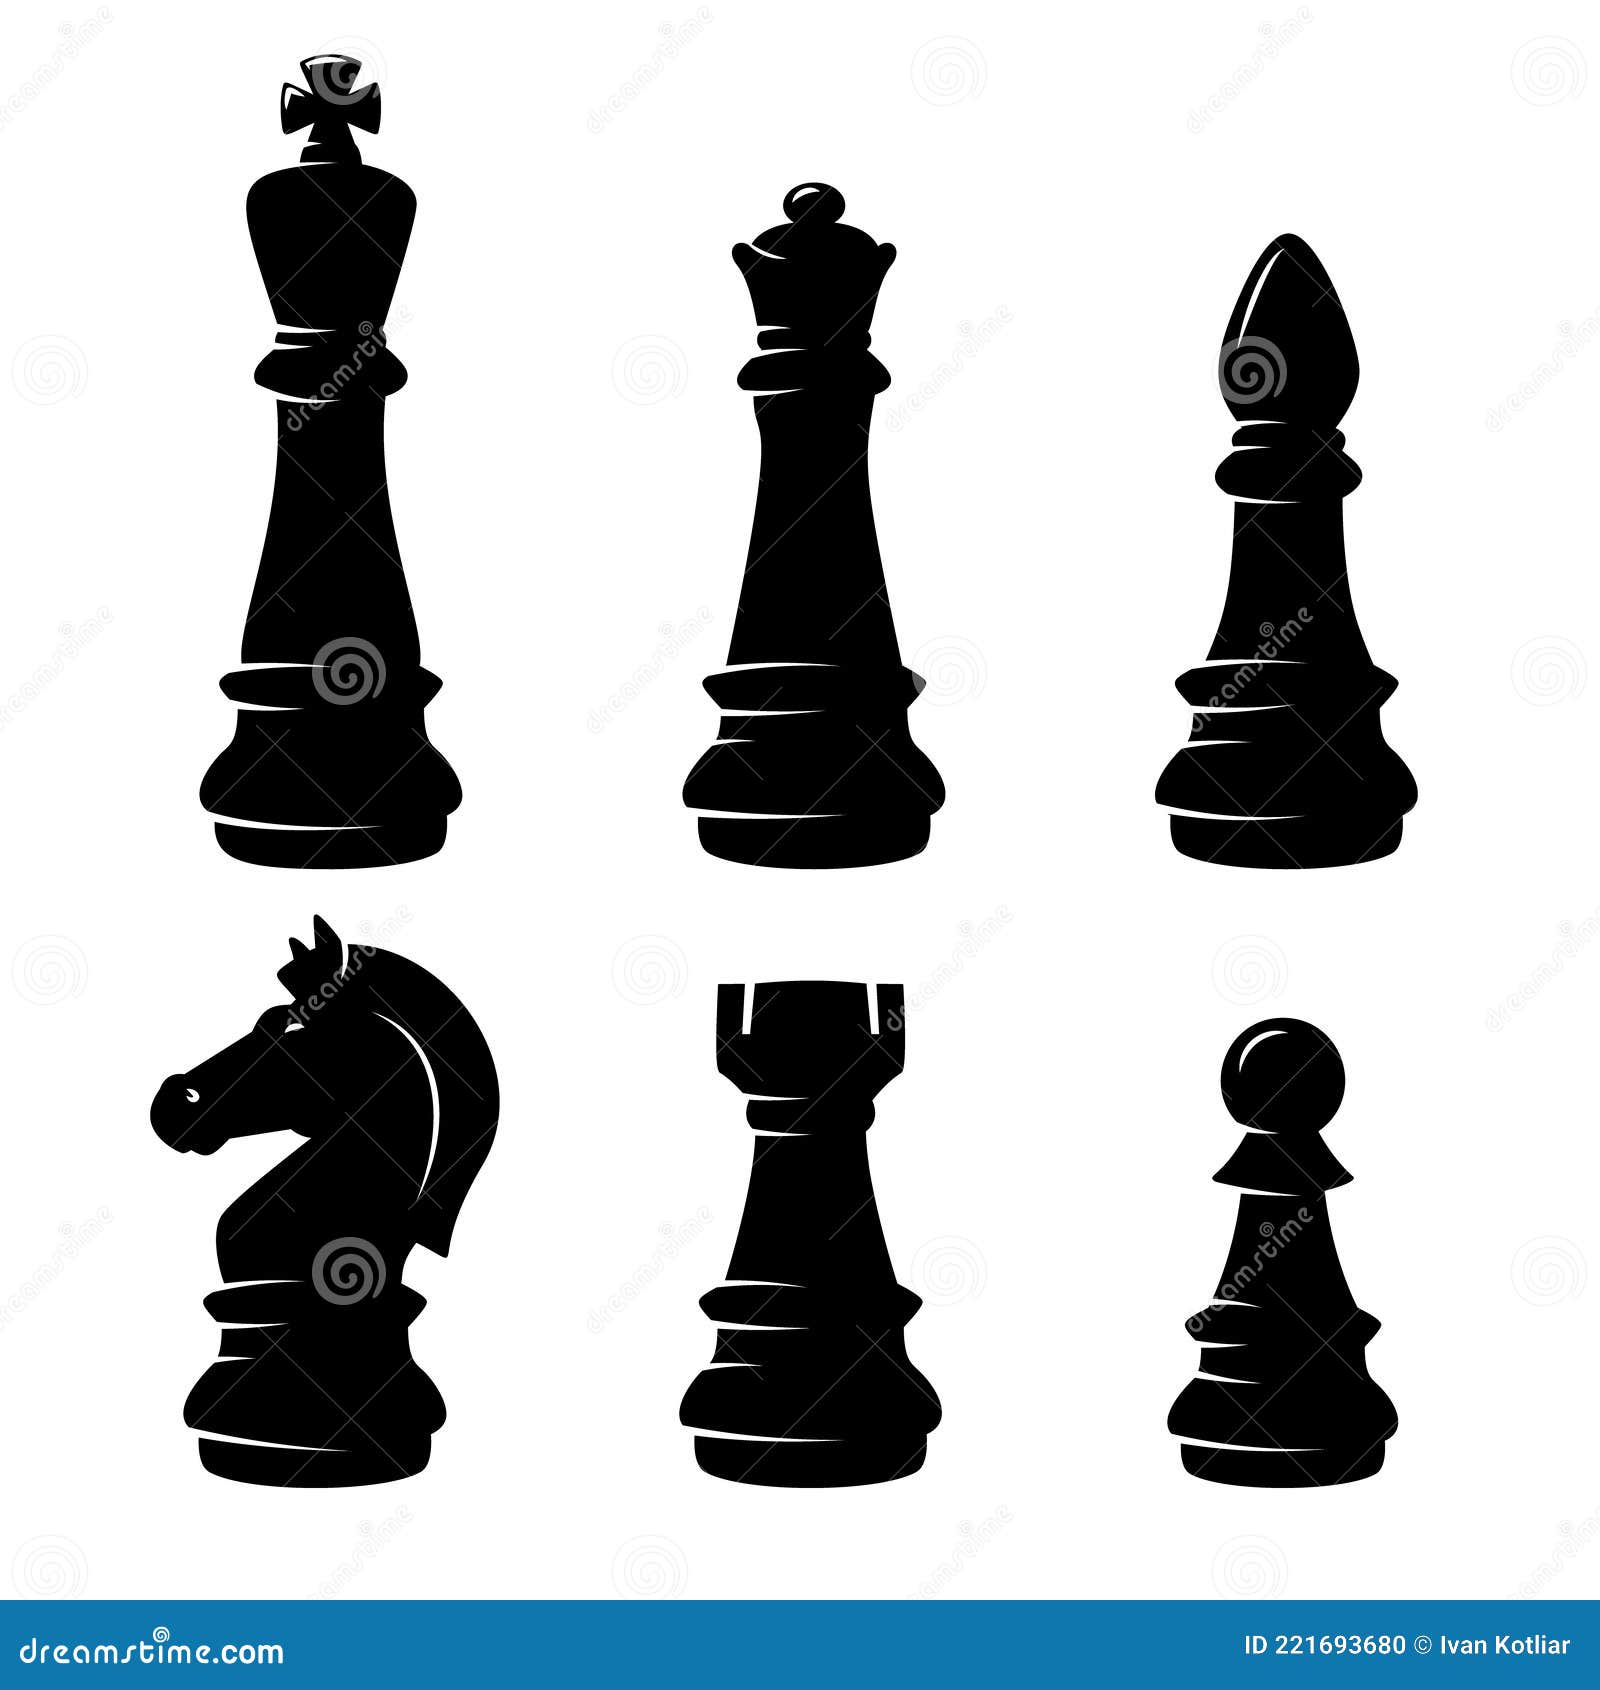 Black queen chess piece design element